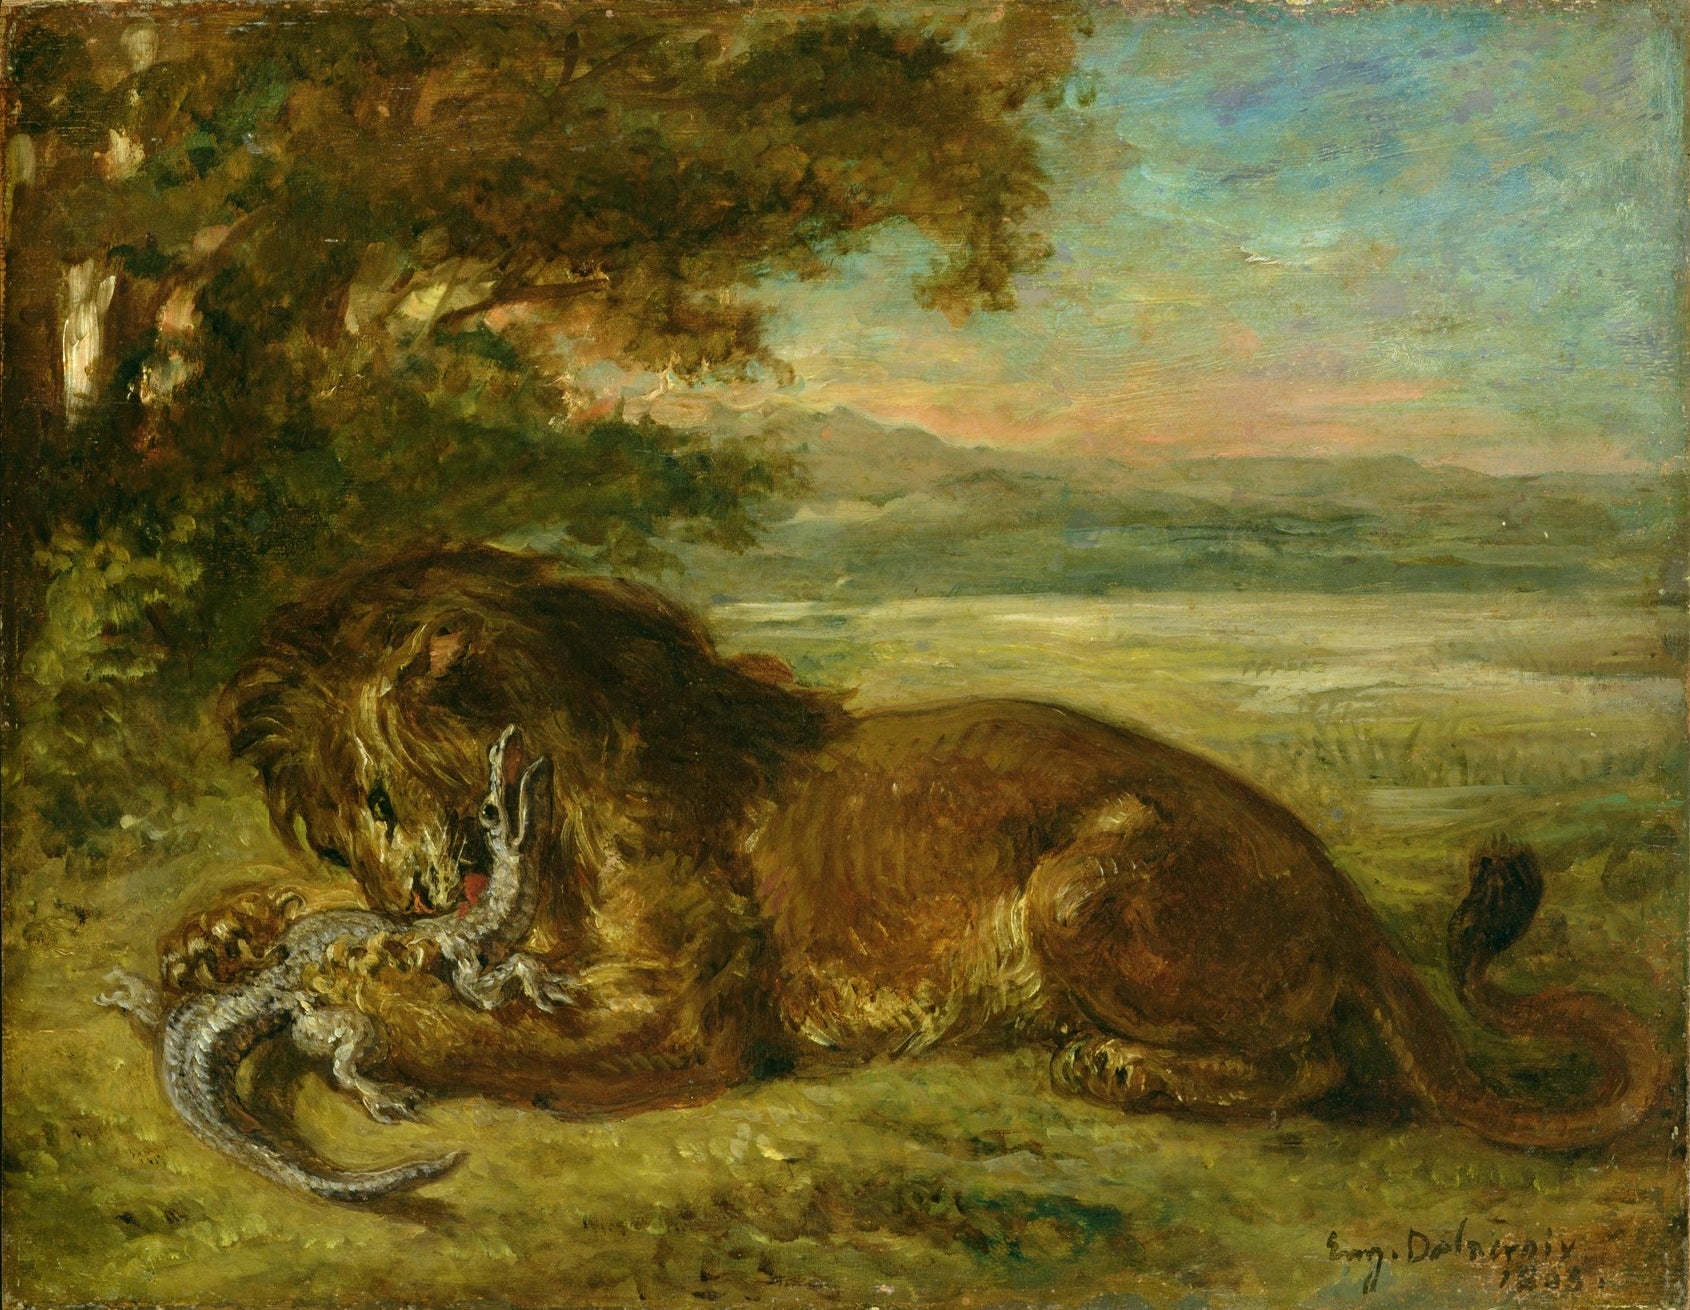 Le lion et l'alligator - Eugène Delacroix